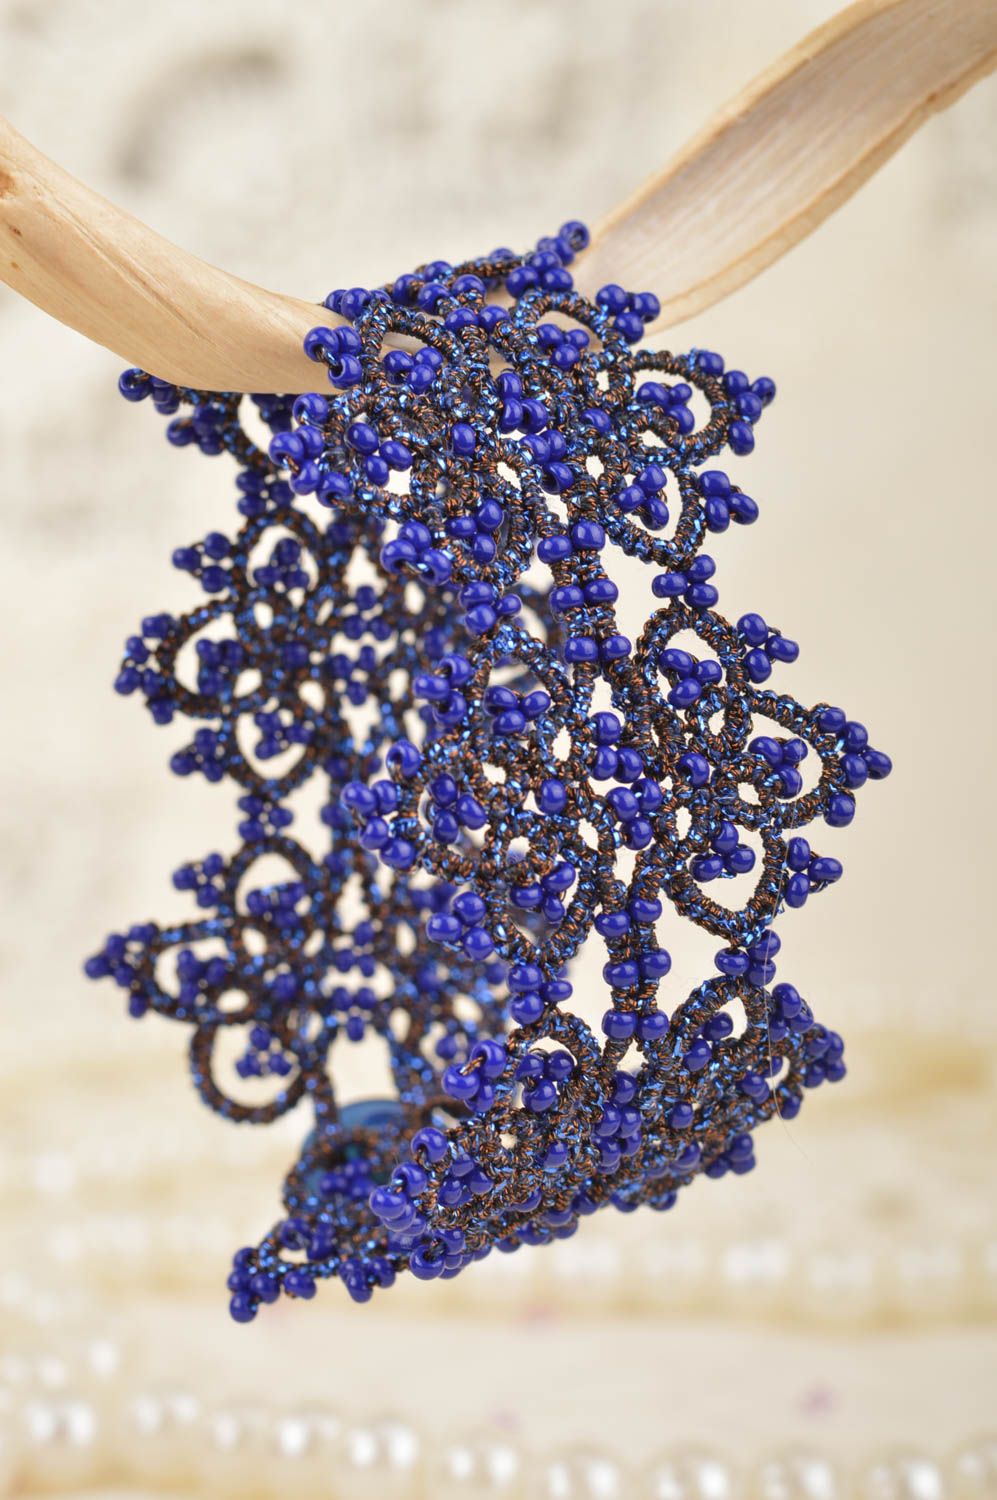 Изящный браслет фриволите с бисером широкий ажурный синий аксессуар хенд мейд фото 3